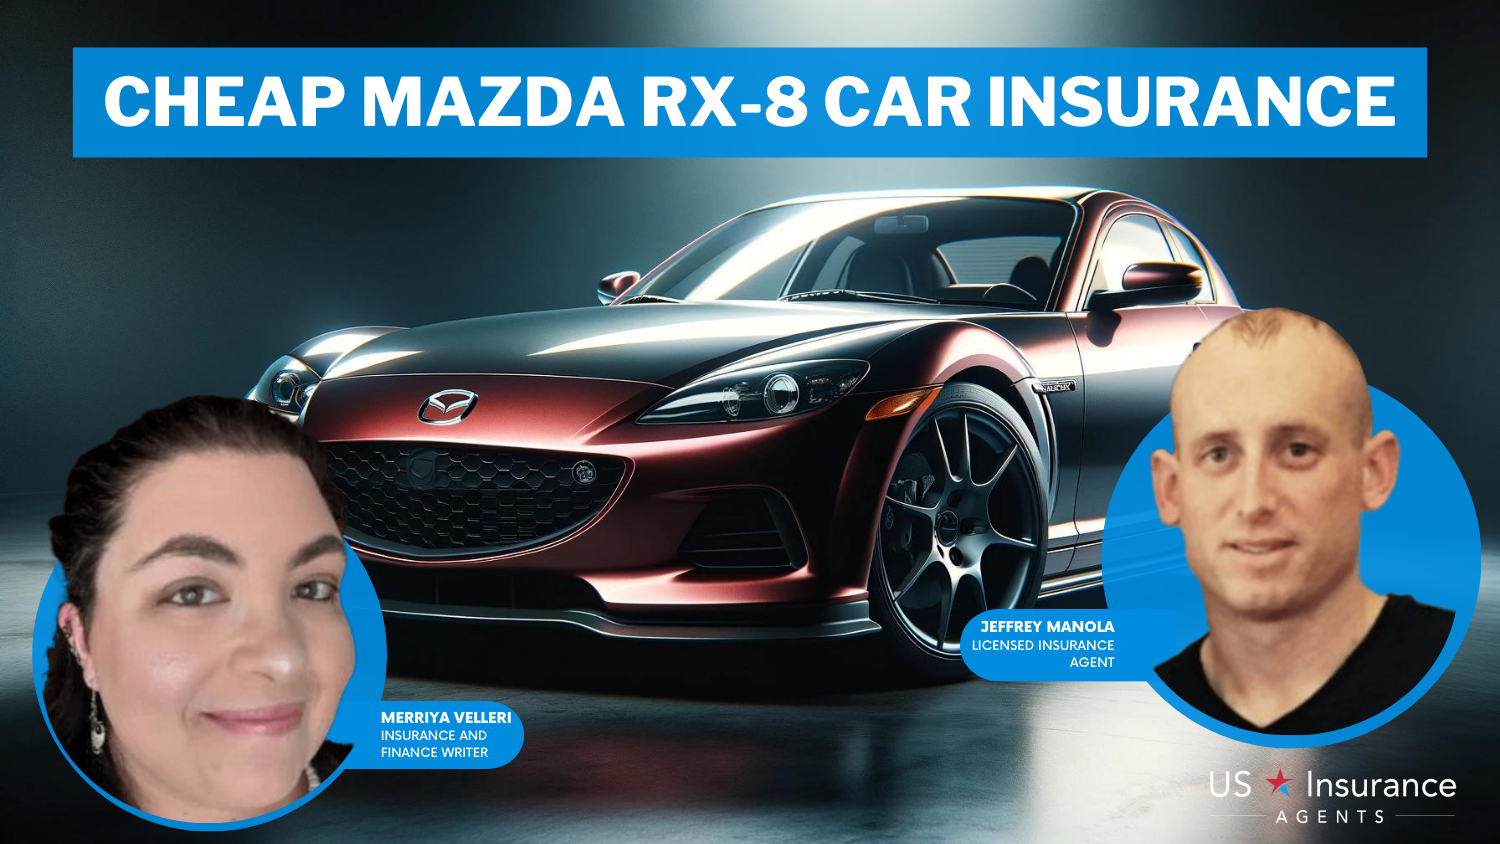 Progressive, USAA, and State Farm: Cheap Mazda RX-8 Car Insurance